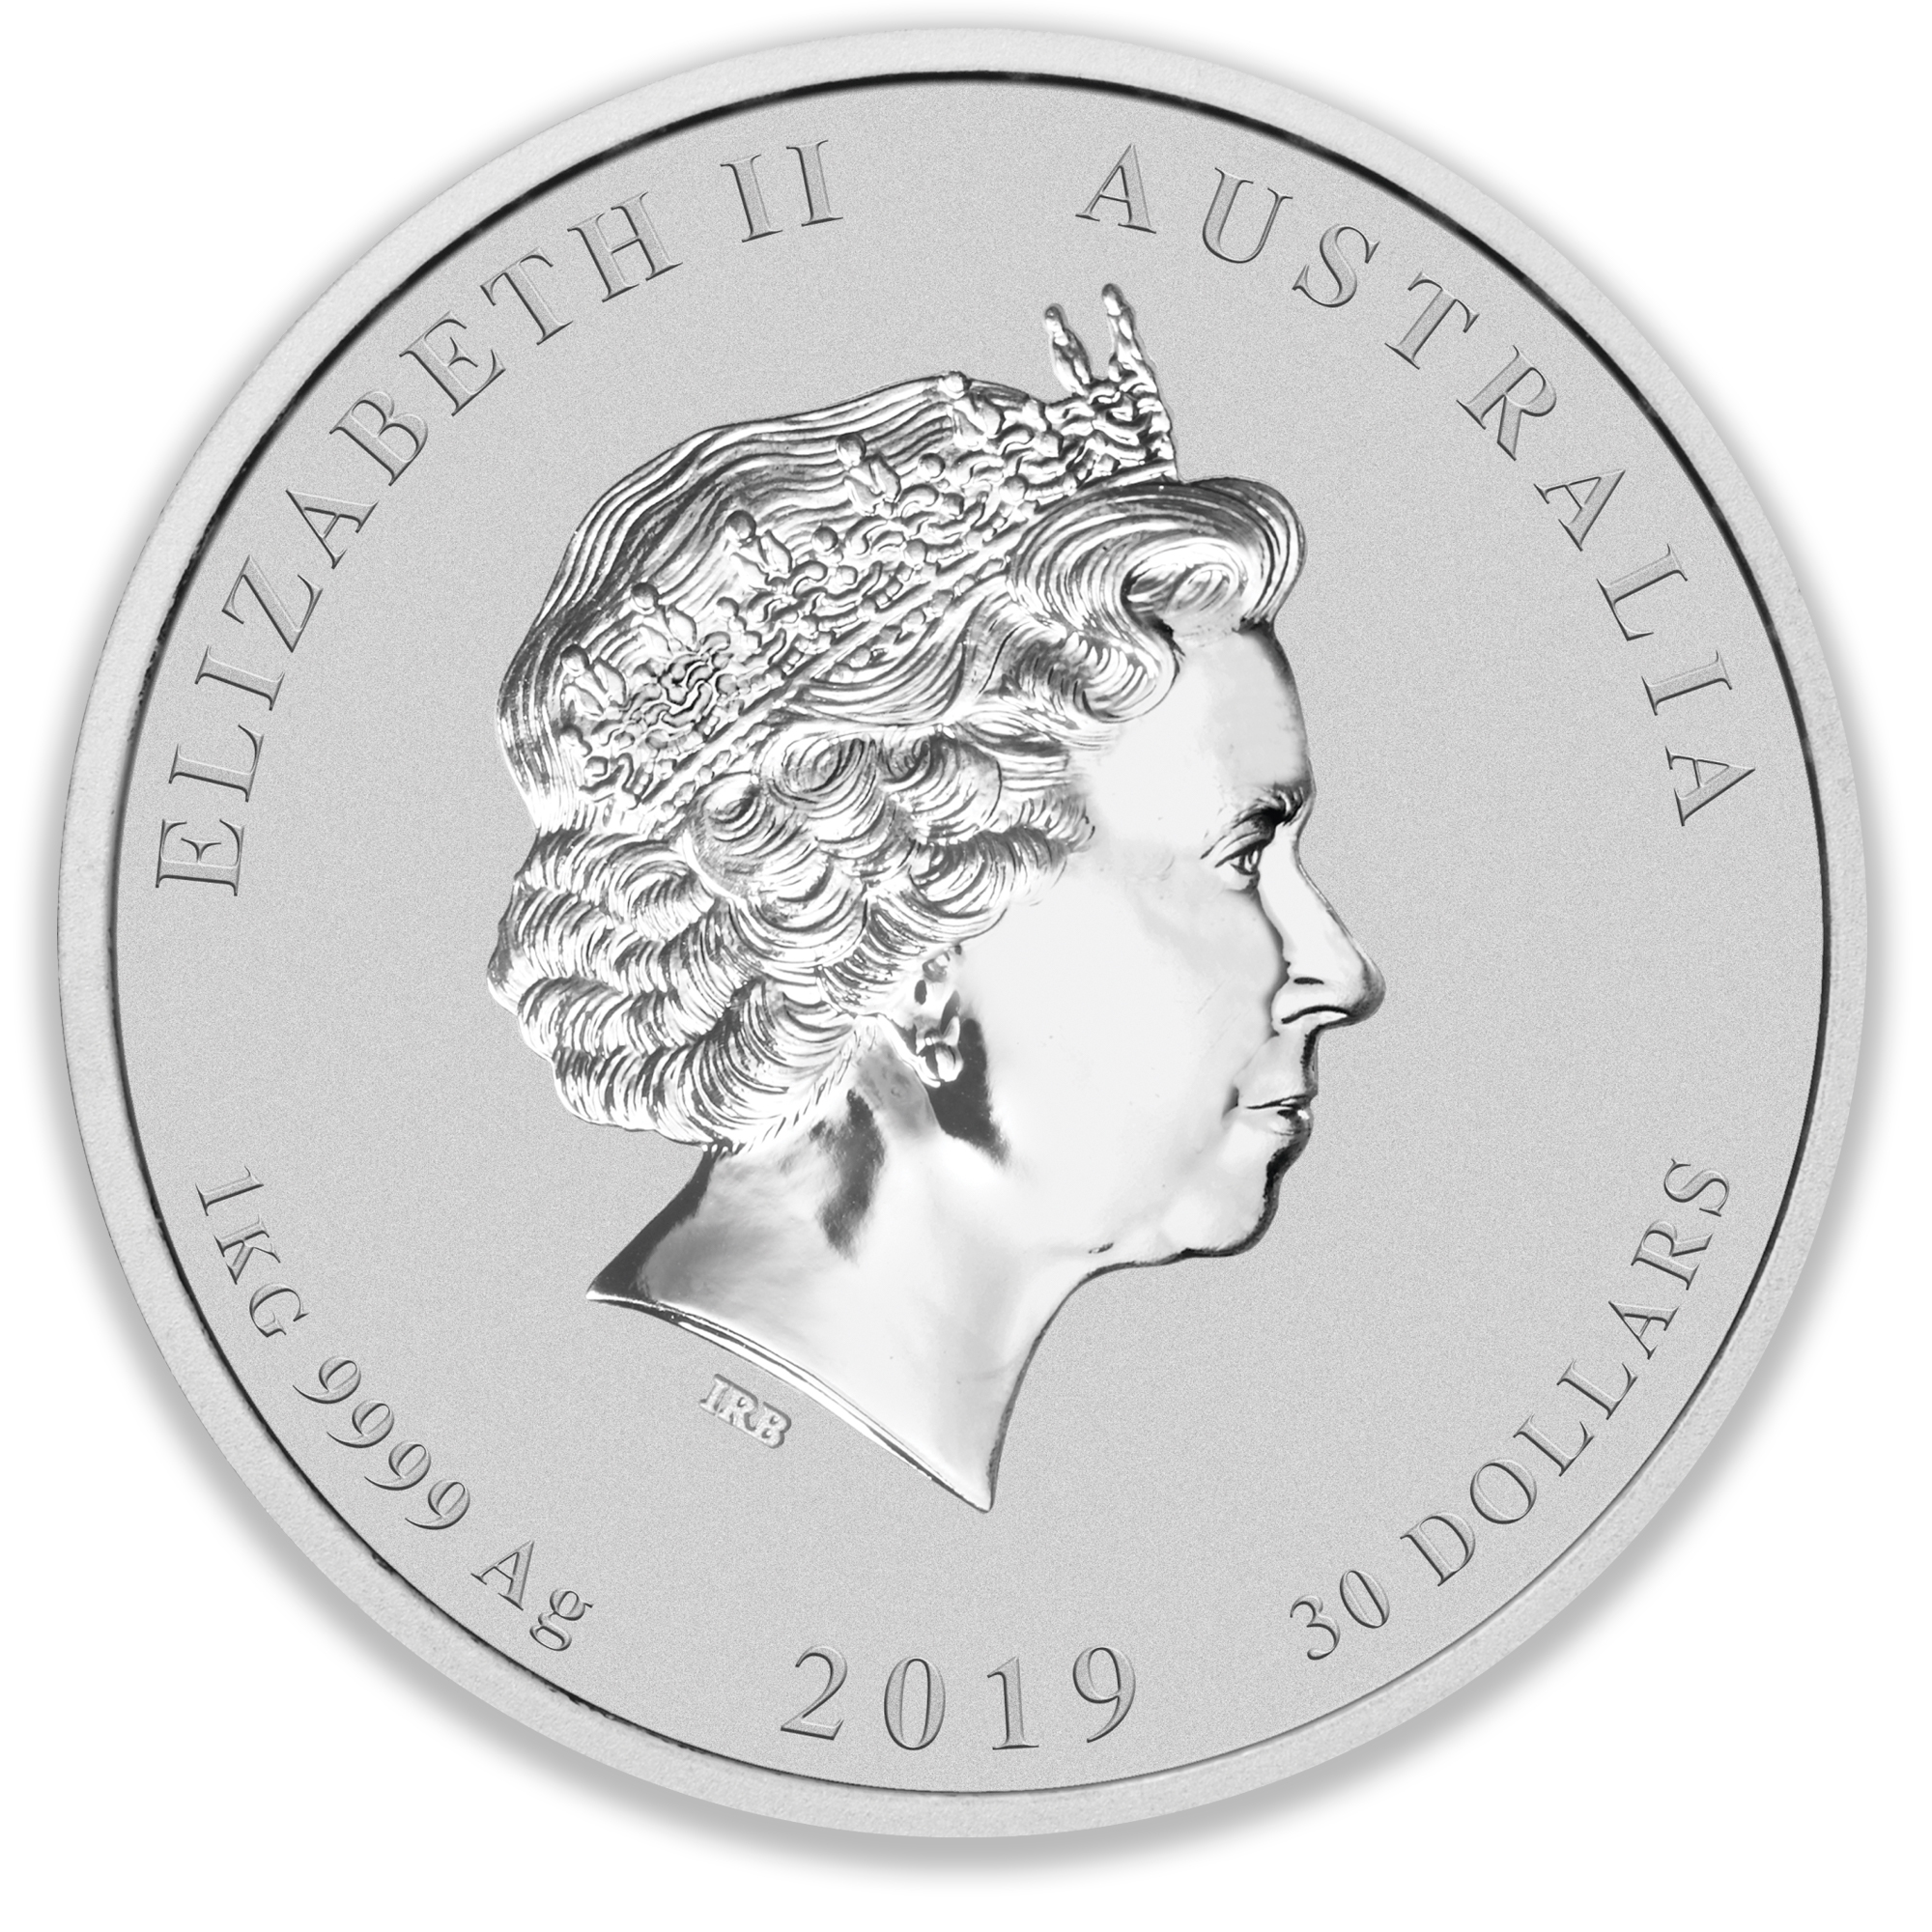 2019 1KG Perth Mint Silver Lunar Pig Coin